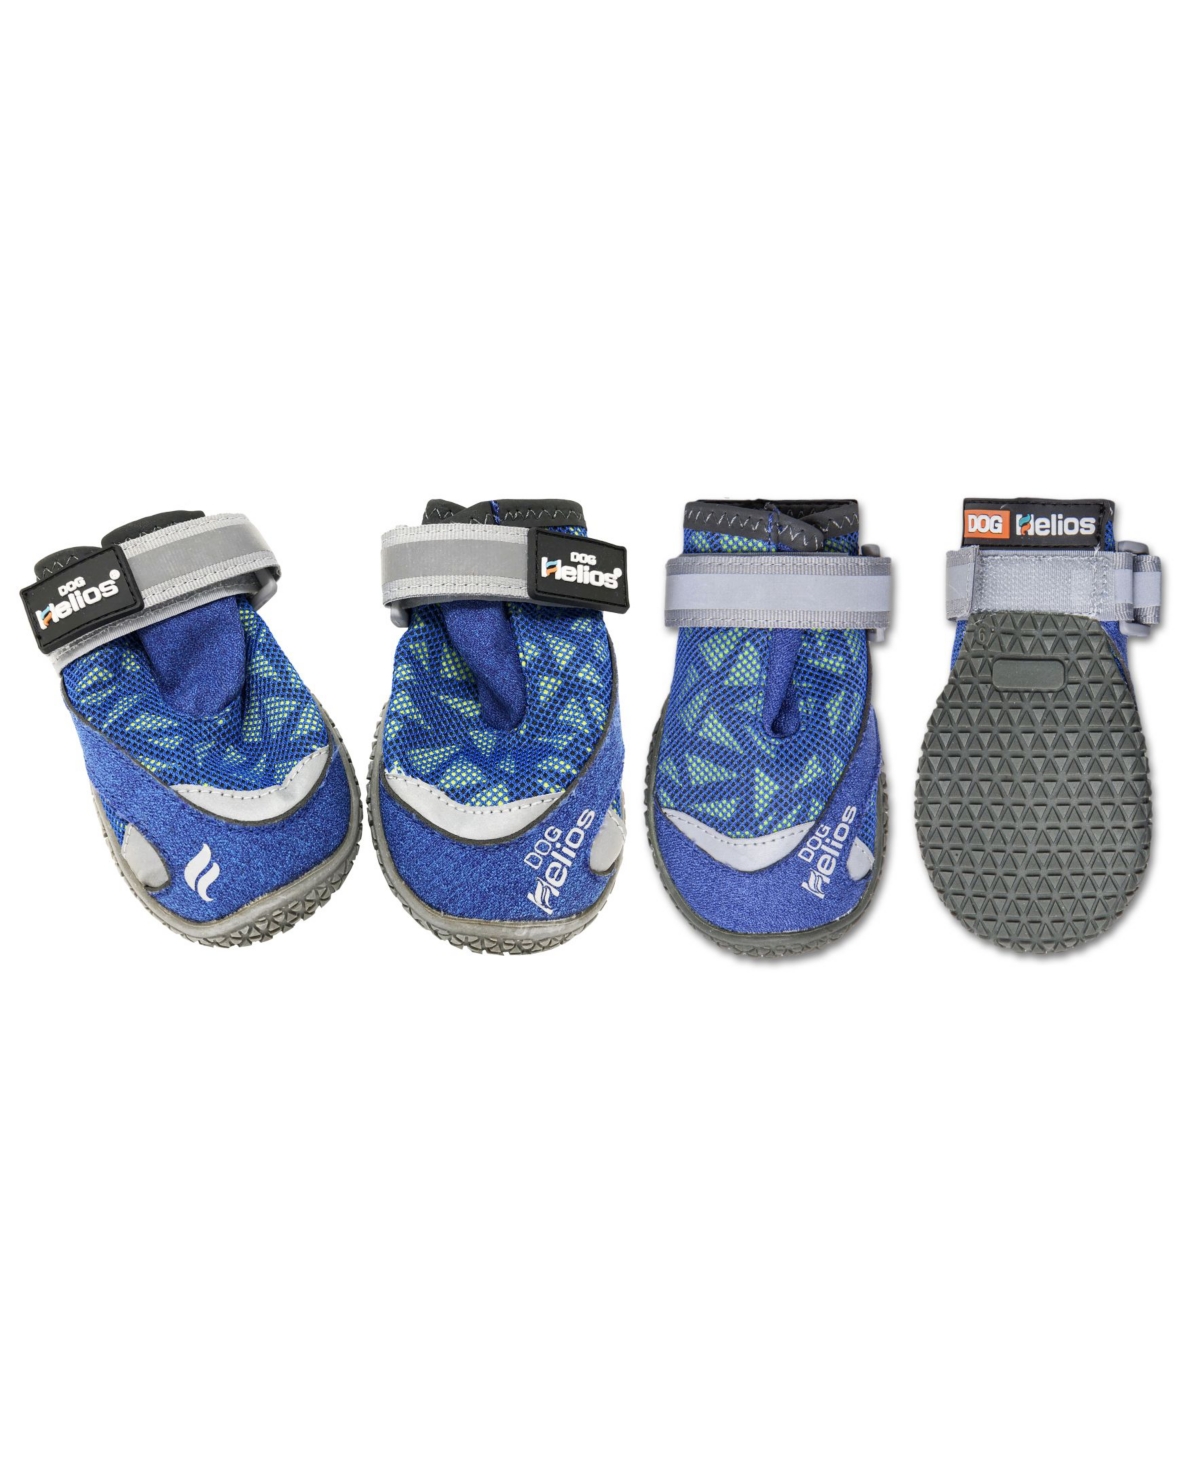 'Surface' Premium Grip Performance Dog Shoes - Blue